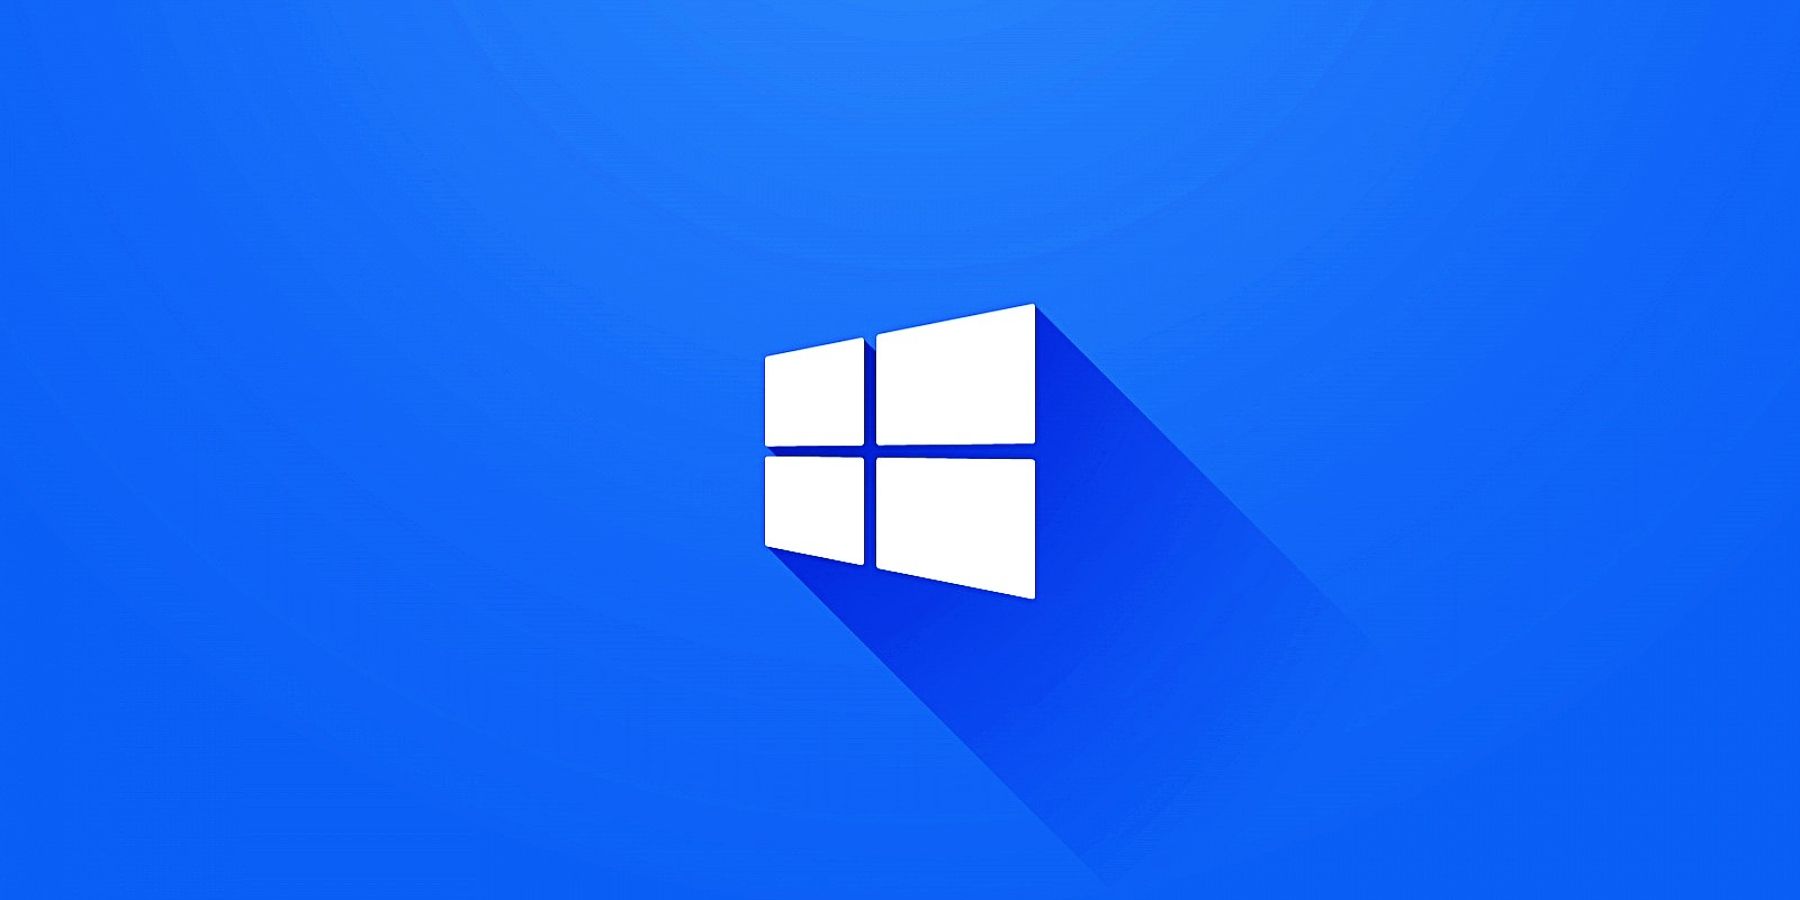 Windows 12: Khám phá tính năng hấp dẫn trong phiên bản Windows mới nhất - Windows 12! Chạy nhanh và ổn định hơn bao giờ hết, Windows 12 sẽ là người bạn đồng hành đáng tin cậy trong hành trình làm việc và giải trí trên máy tính của bạn.